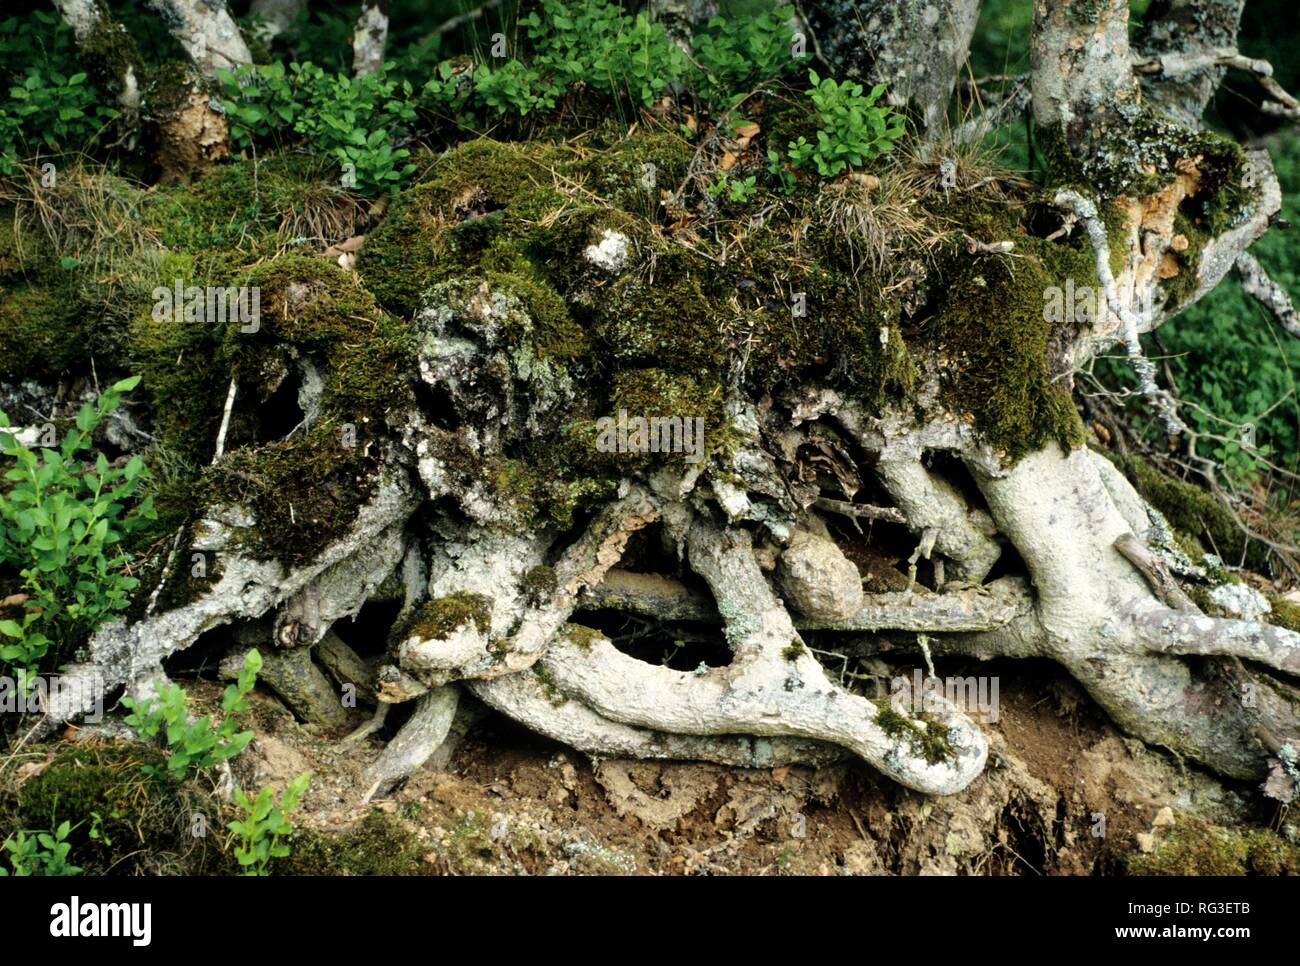 DEU Germania: piante, muschi e licheni. Foto Stock